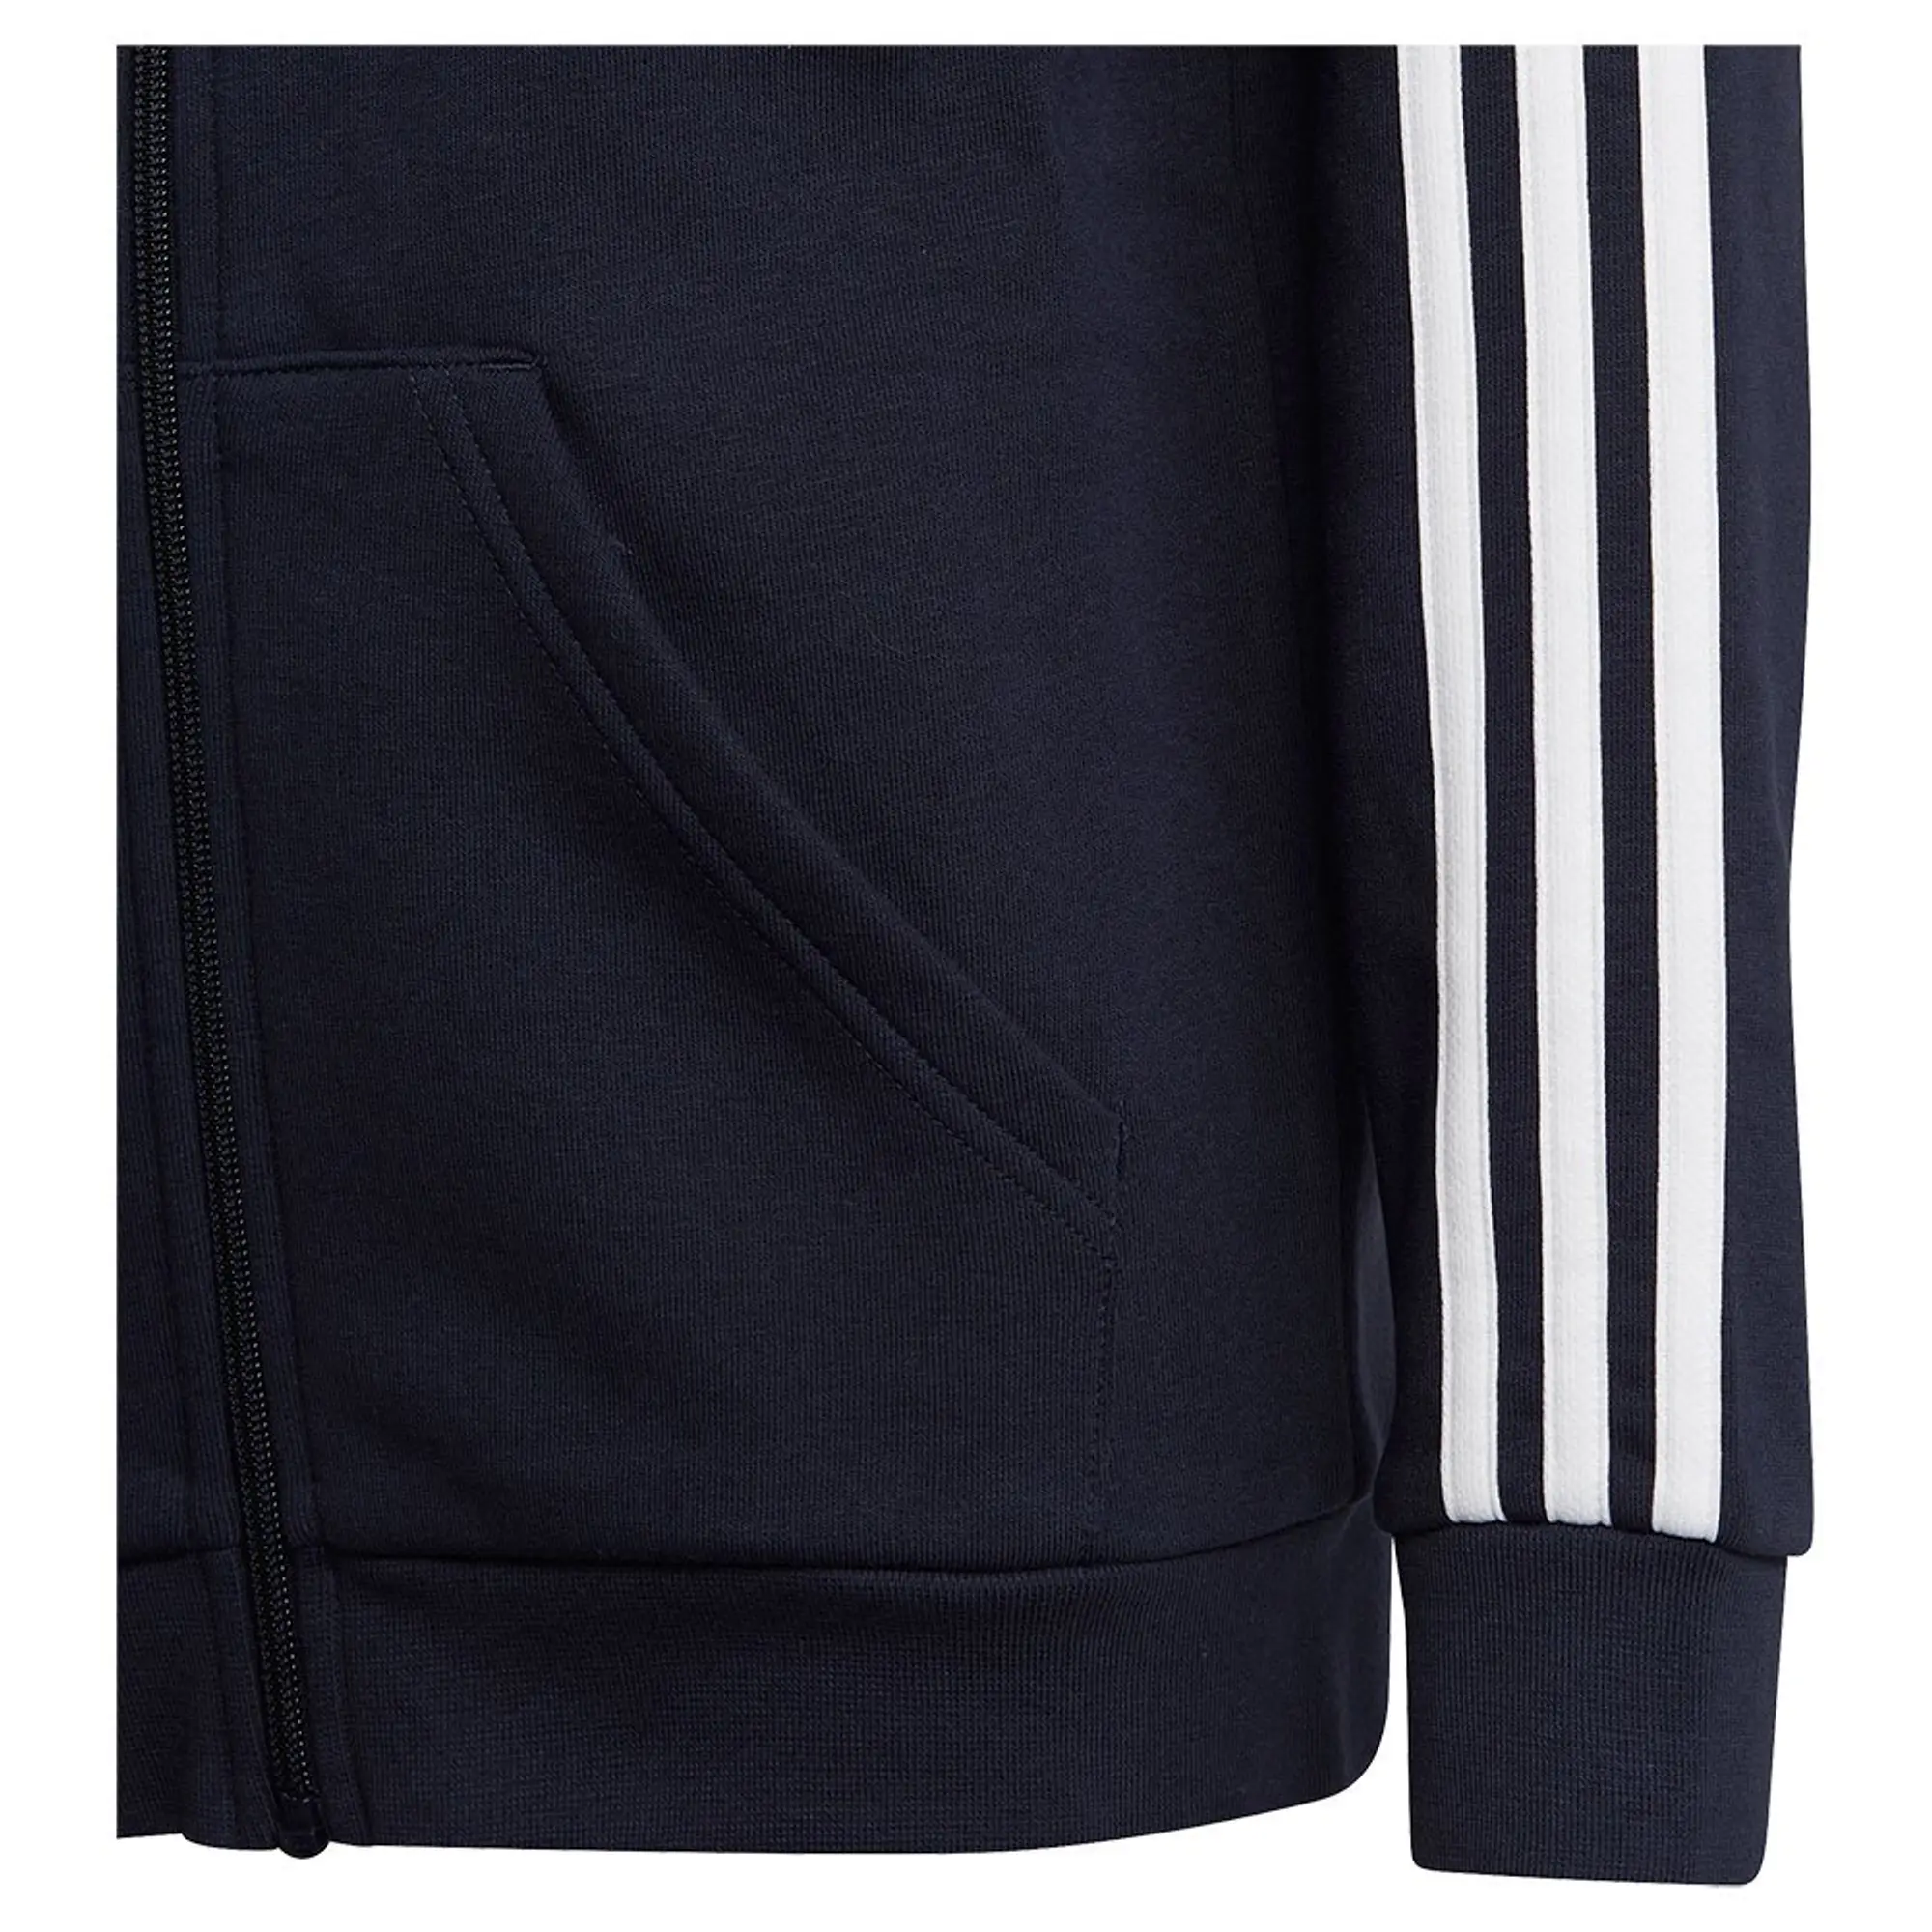 Boys, adidas Sportswear Essentials Junior Unisex 3 Stripe Full Zip Hoodie - Navy, Navy